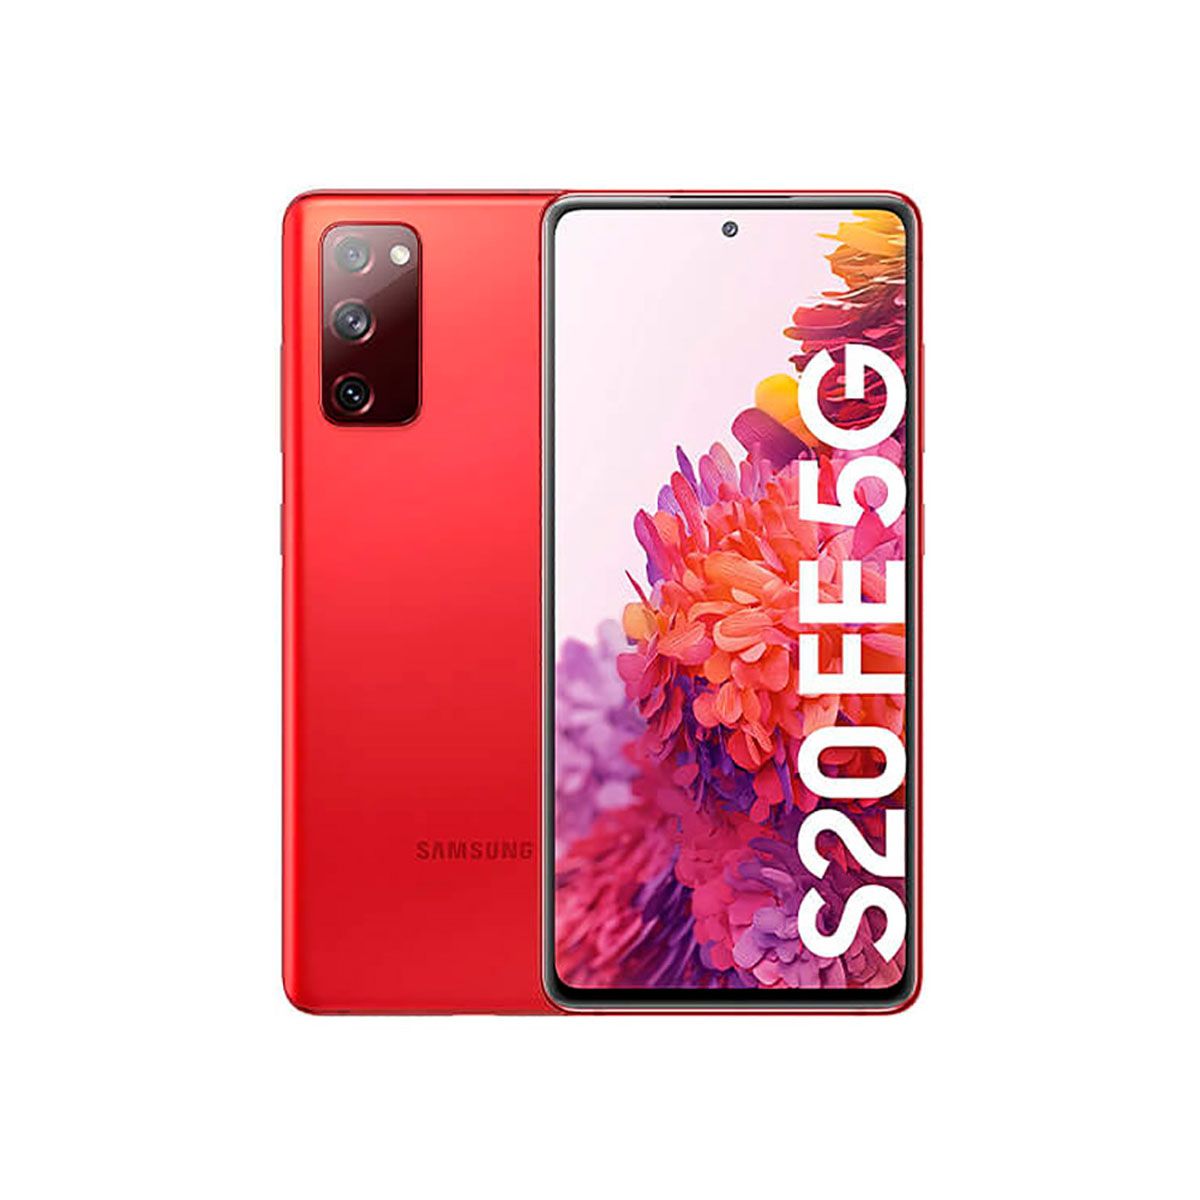 Samsung Galaxy S20 FE 5G 6GB/128GB Red (Cloud Red) Dual SIM G781B